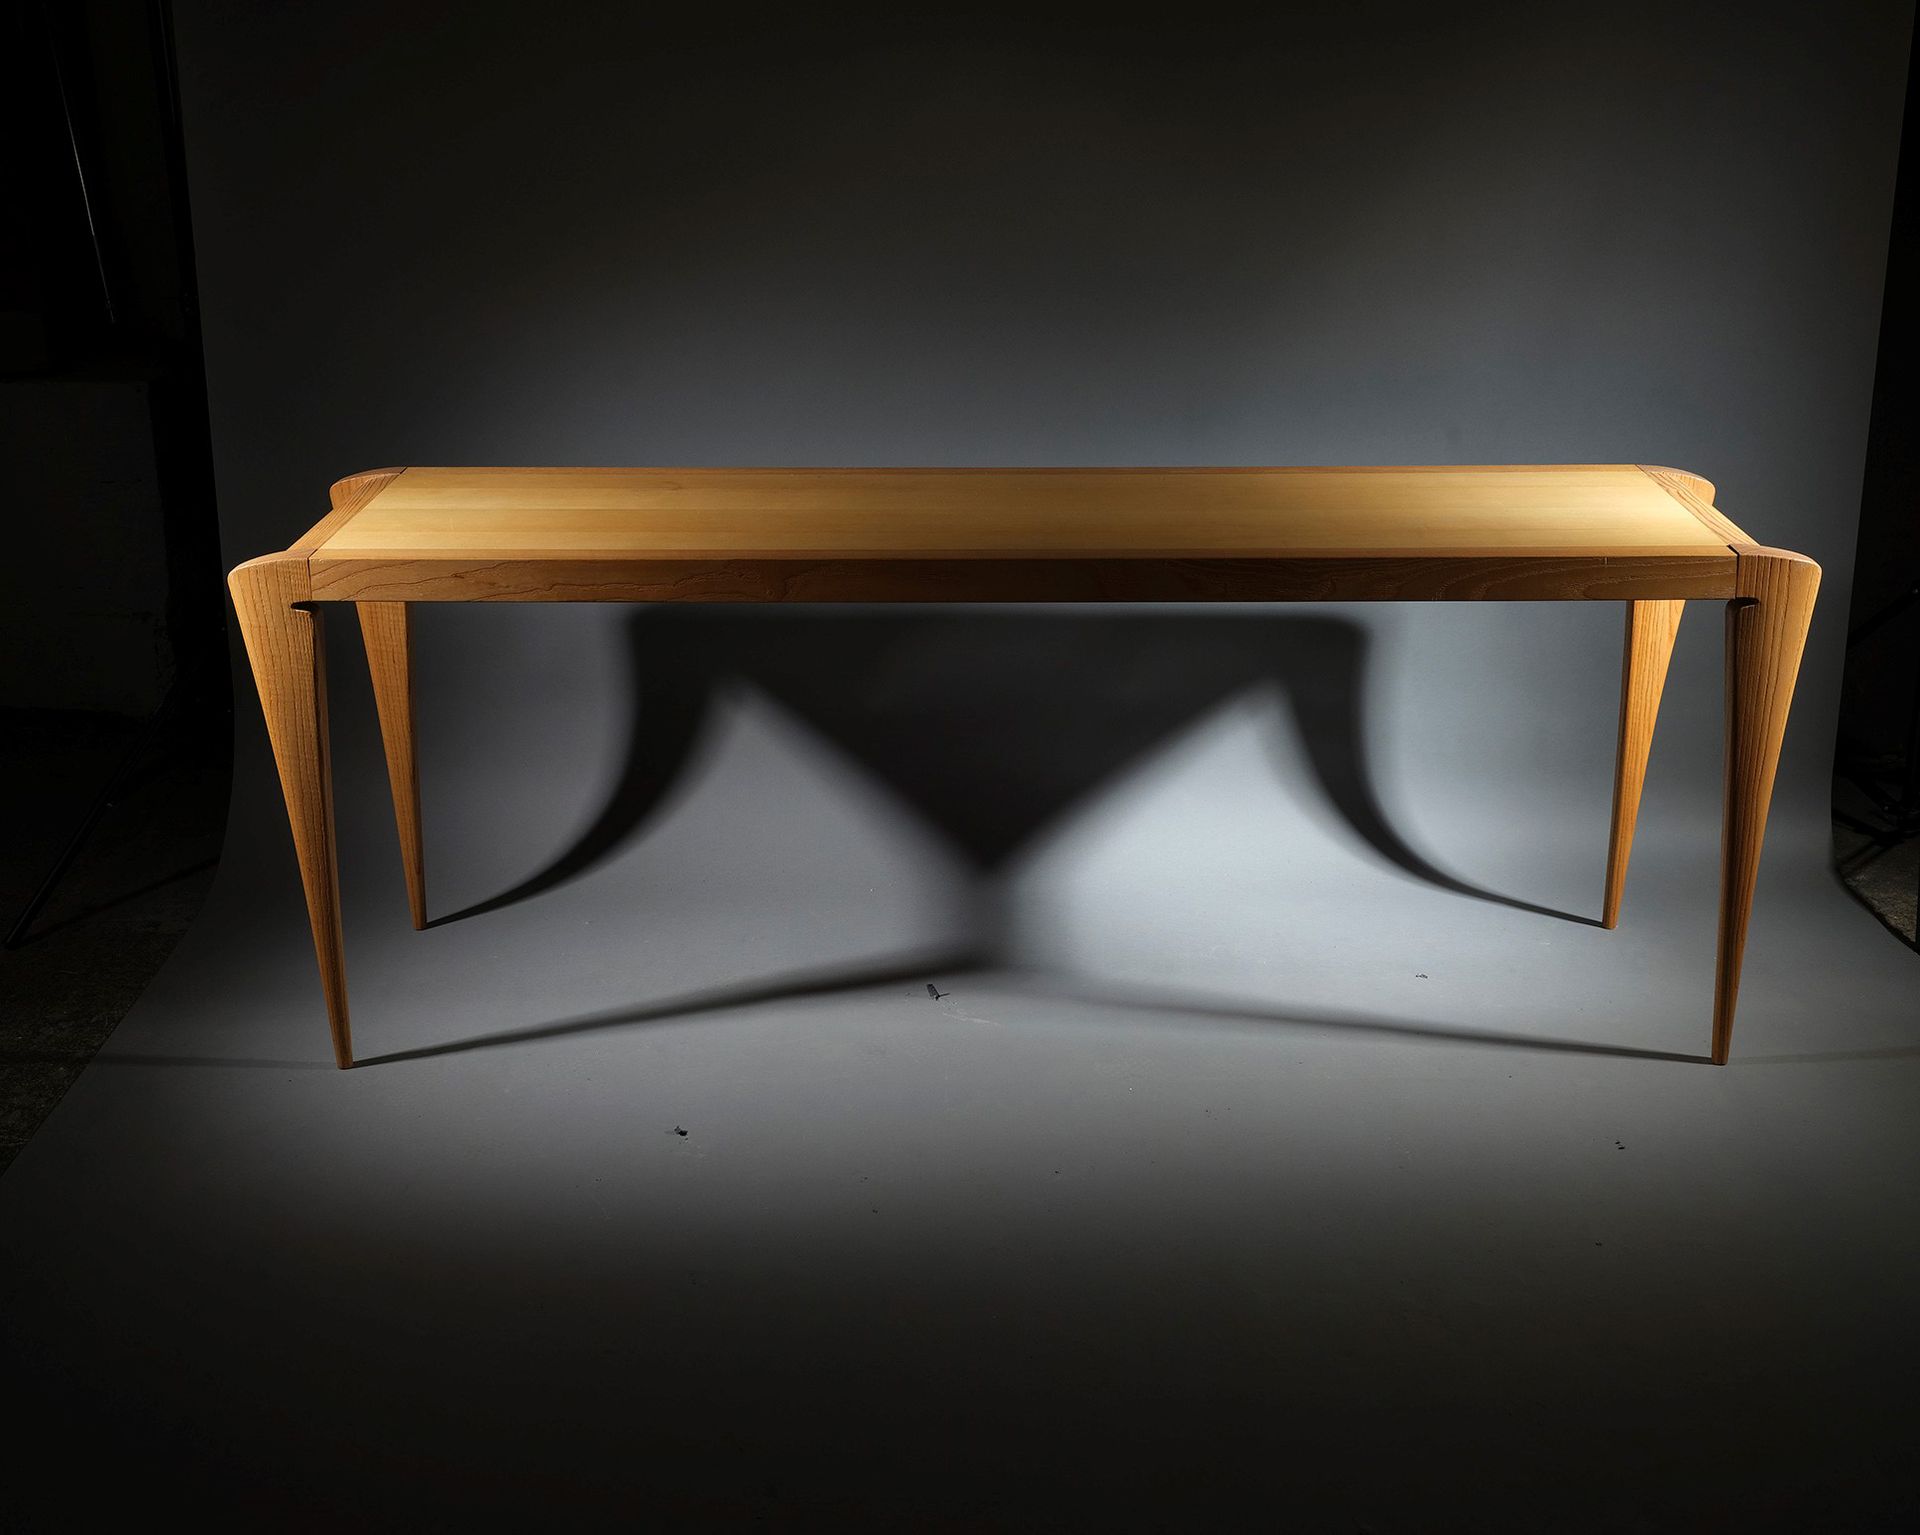 TRAVAIL ITALIEN 染色榆木梳妆台，长方形桌面，四脚锥形角腿
H.75 厘米 - 208 厘米 - 55 厘米